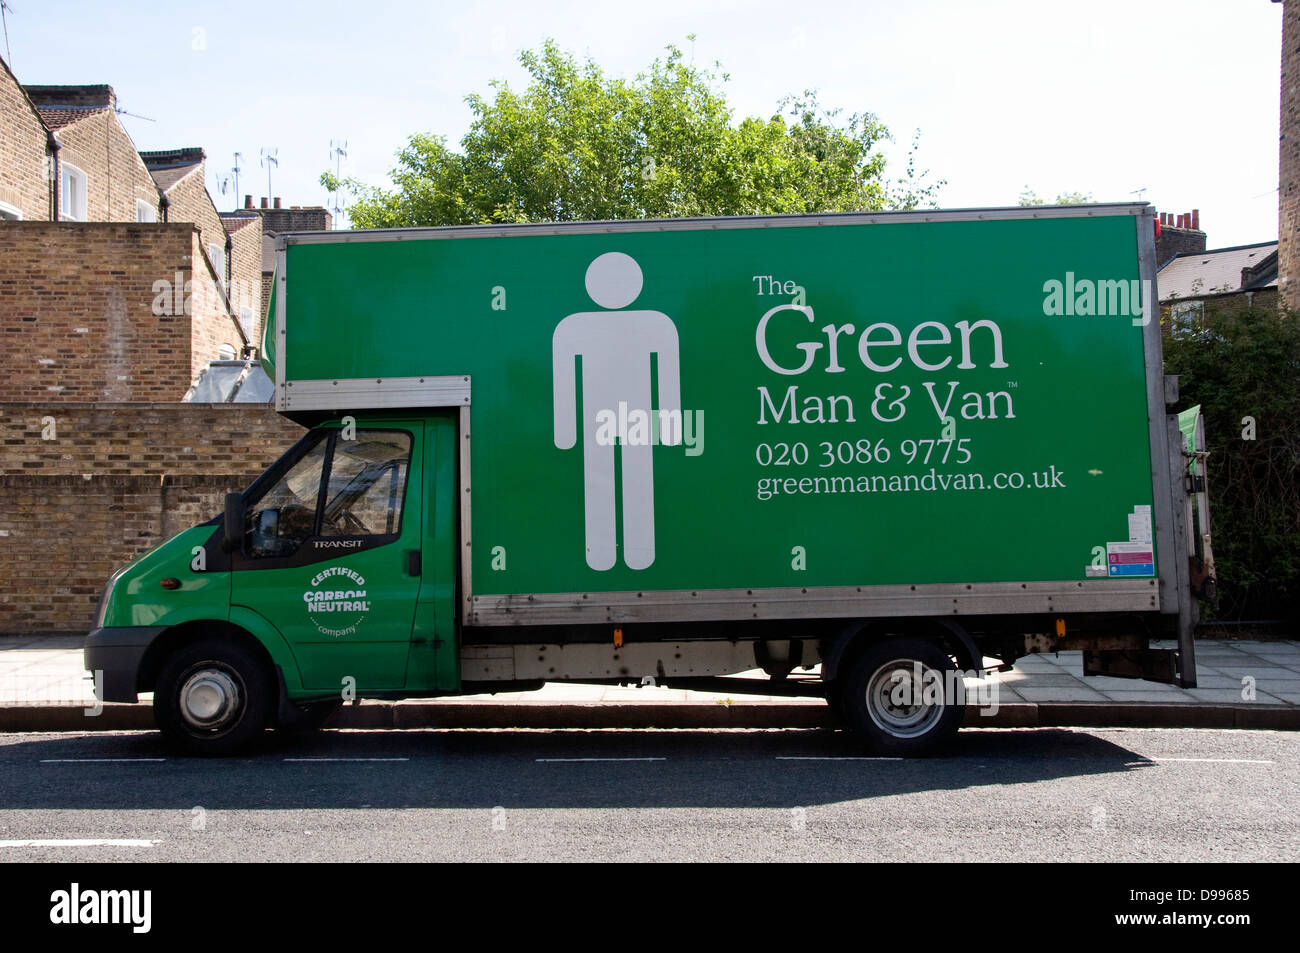 El hombre verde & van impresos en el lateral de la camioneta de color verde con carbono neutral en la puerta, el distrito londinense de Hackney, Inglaterra Foto de stock